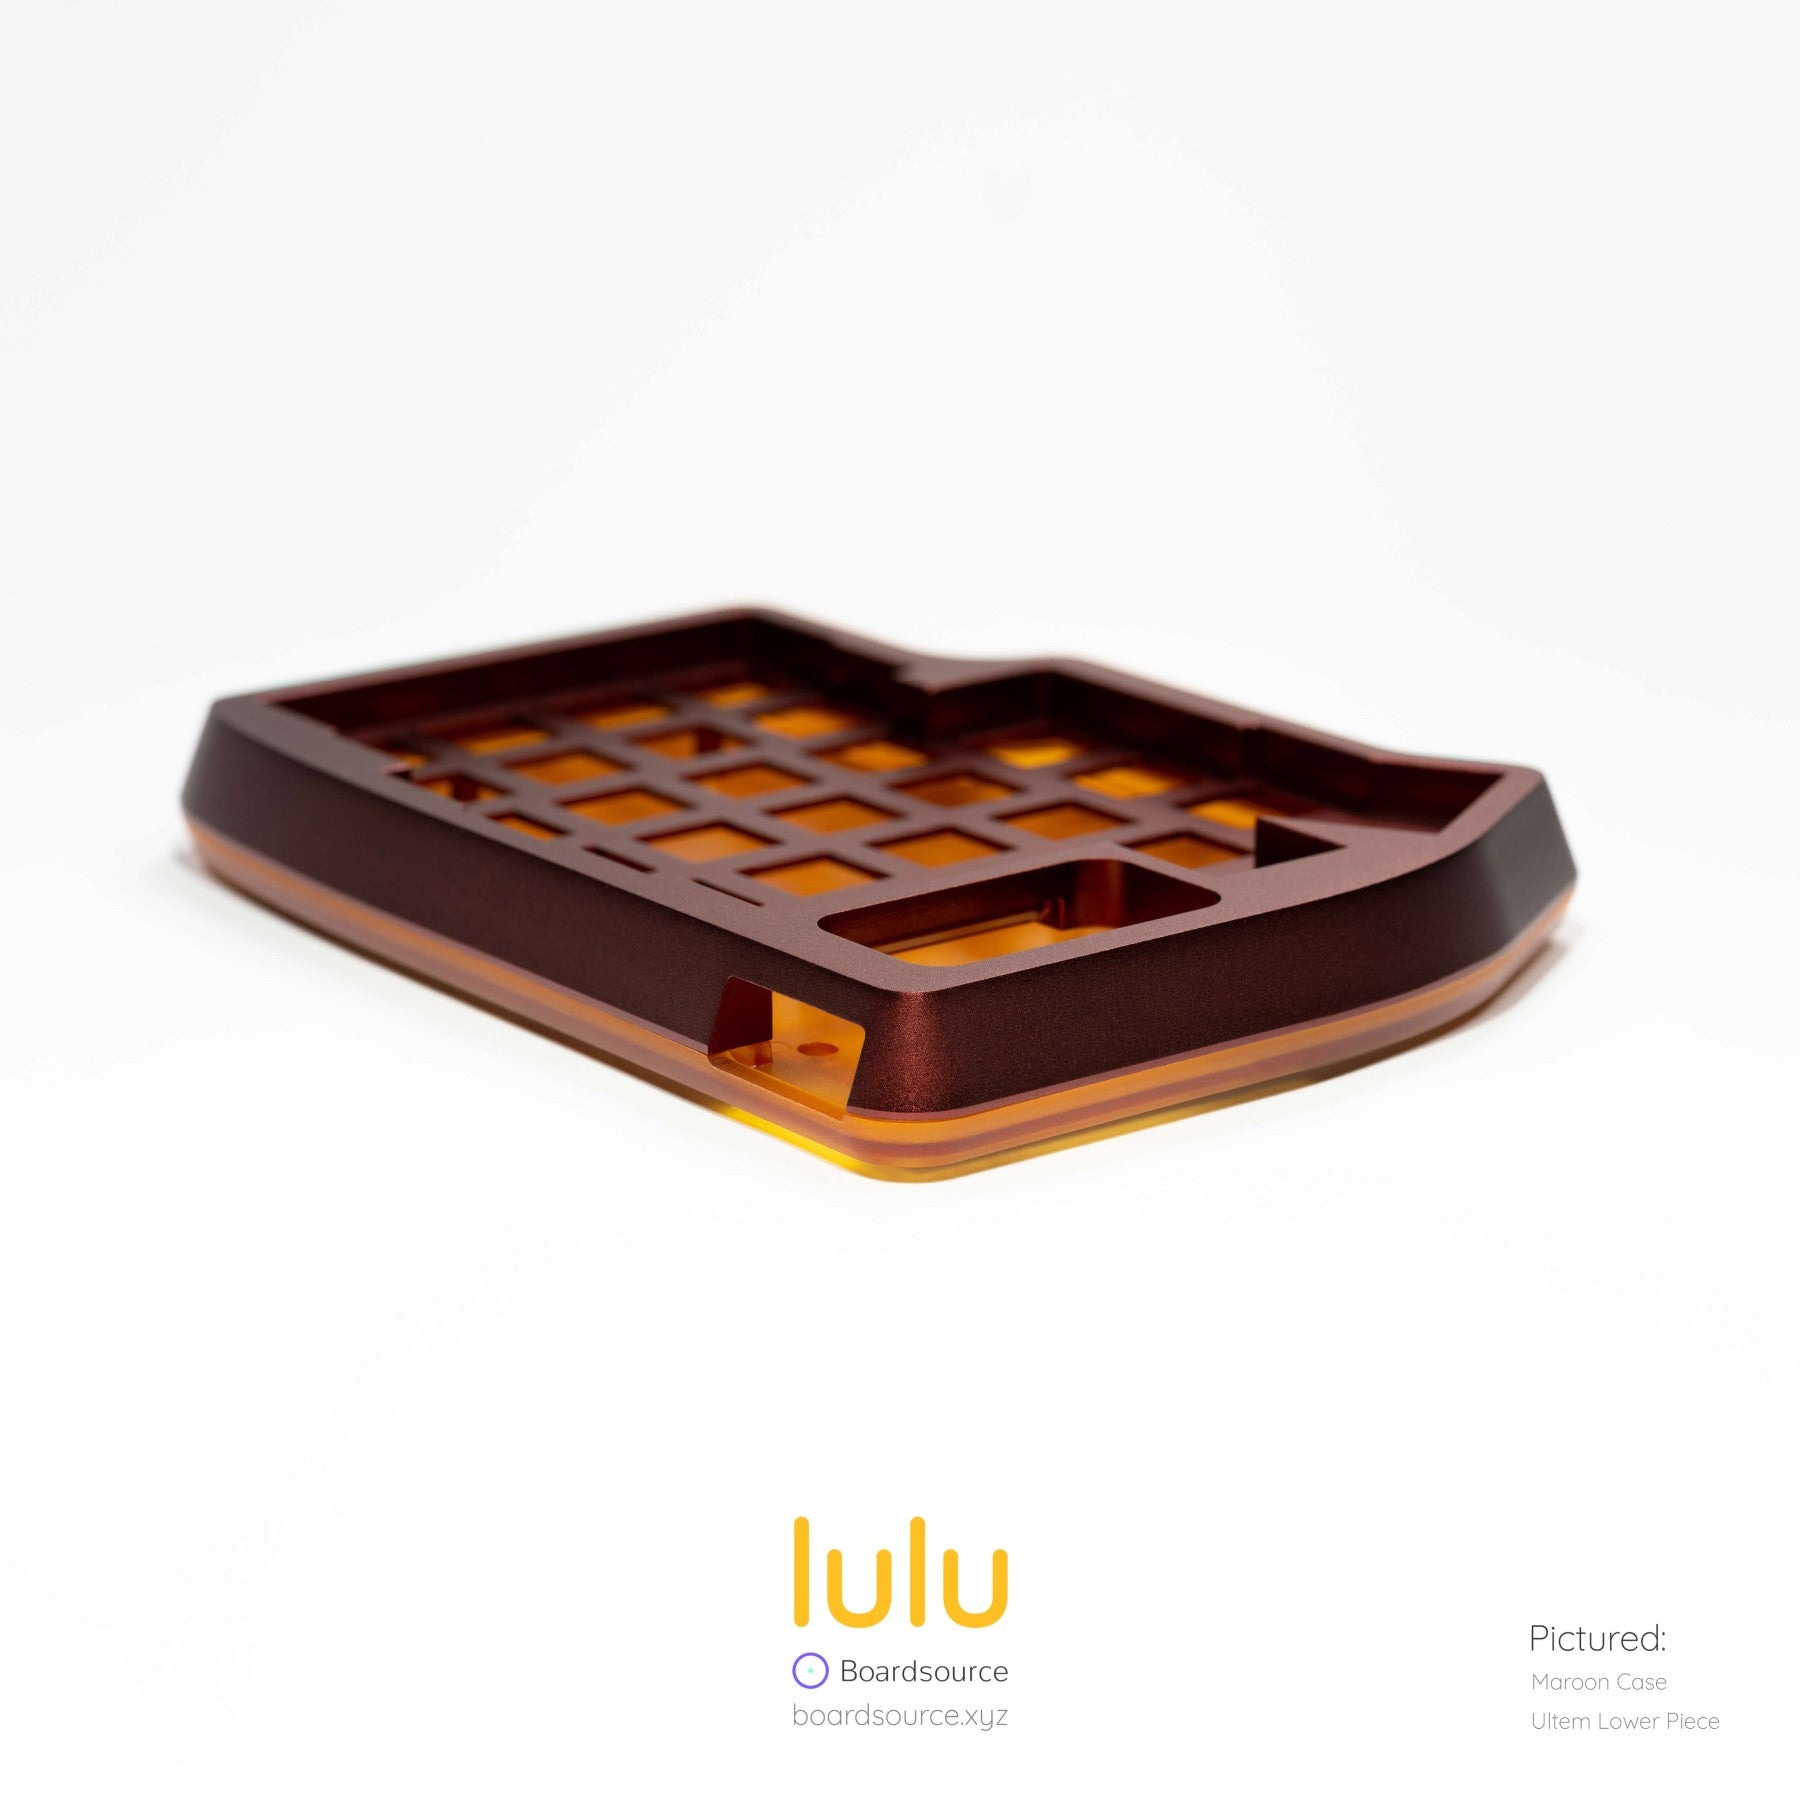 "lulu" by Boardsource